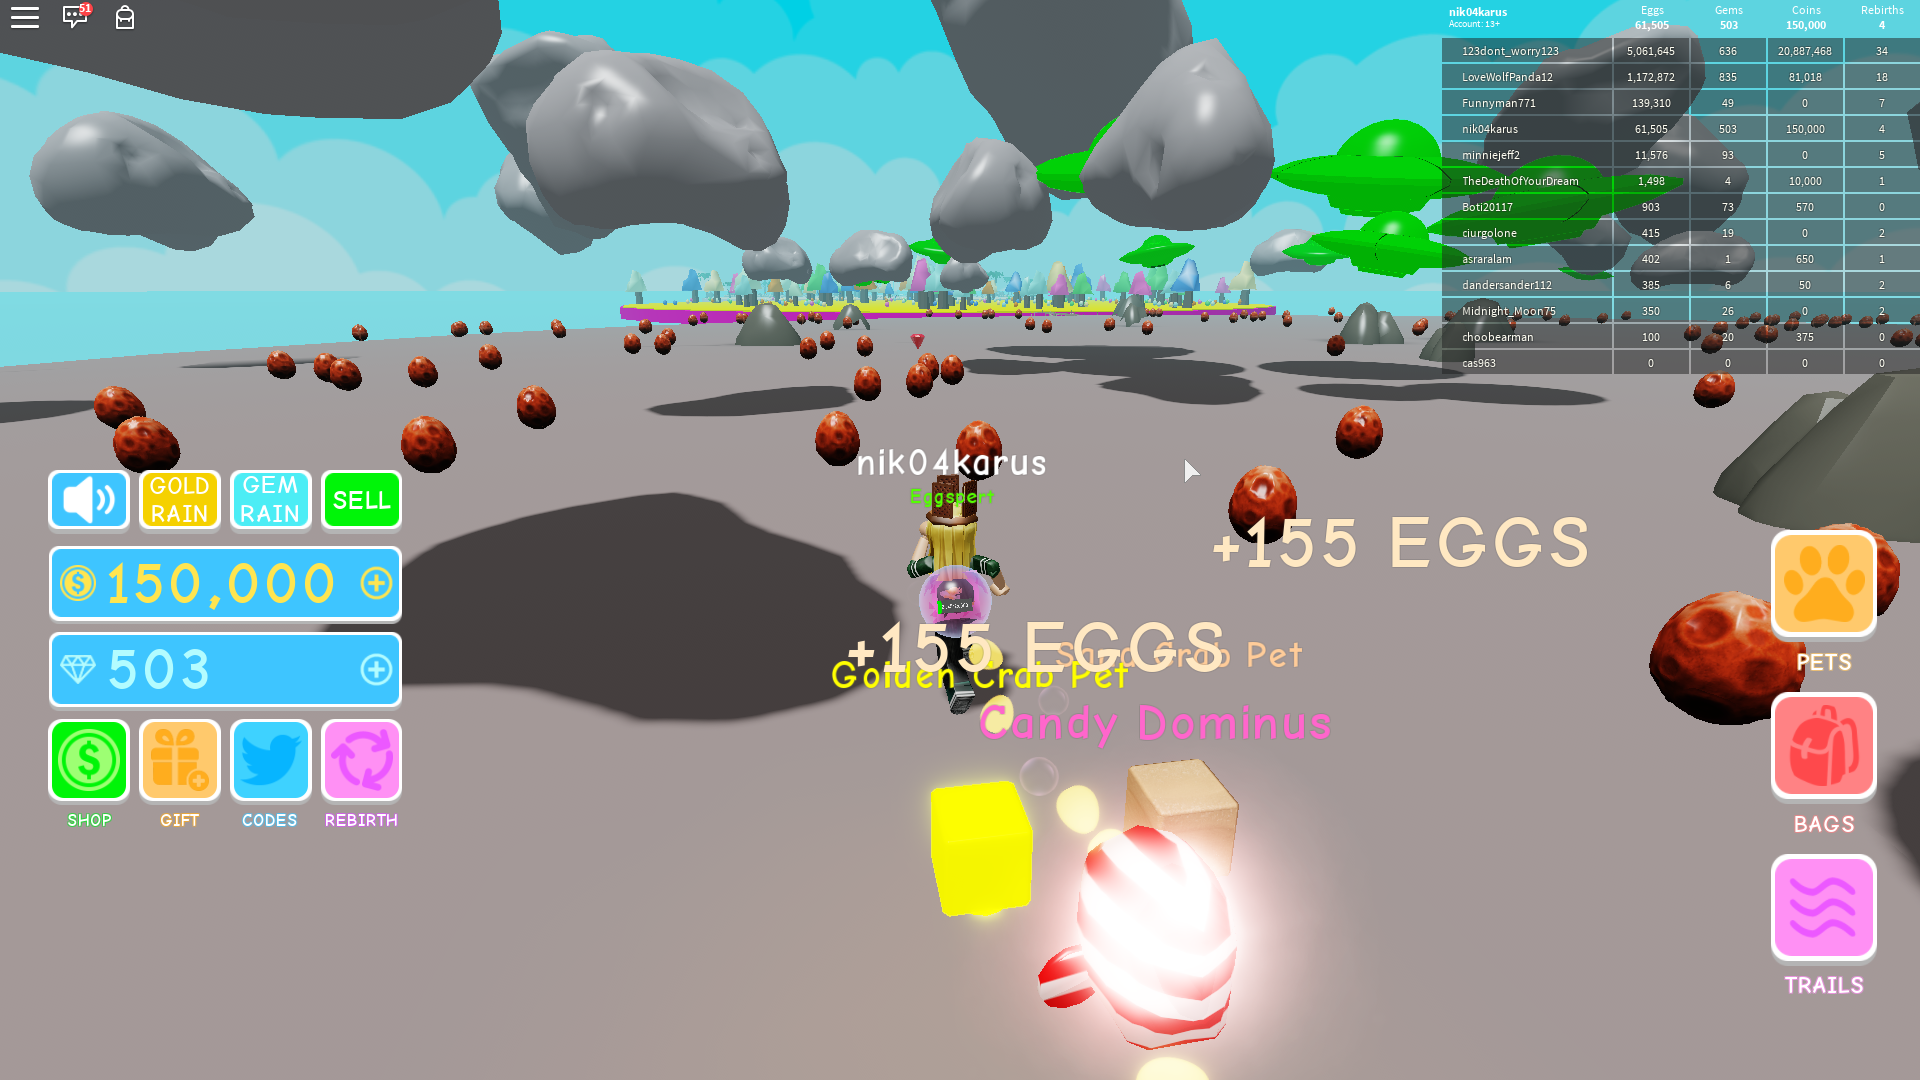 Роблокс новое яйцо. Симулятор яйца. Симулятор яйца в РОБЛОКС. РОБЛОКС симулятор питомцев яйцо. Квест яйцо пет симулятор.